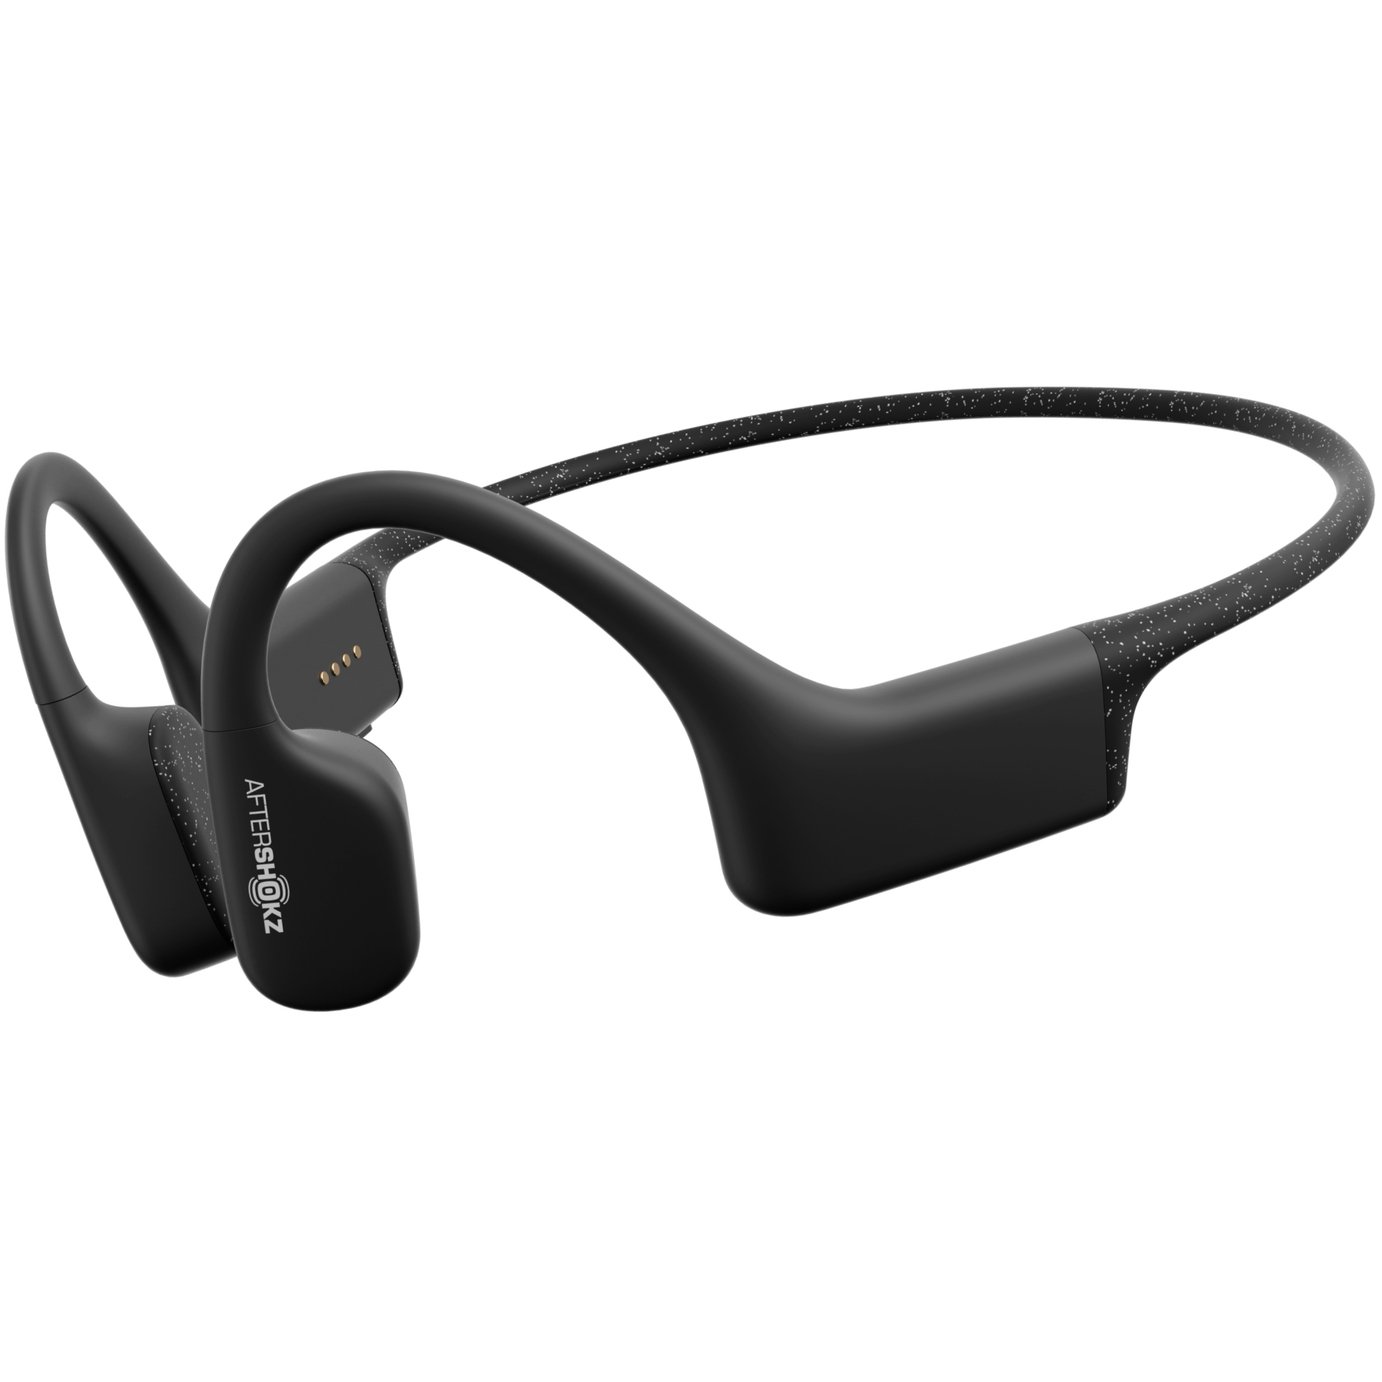 Aftershokz Xtrainerz In-Ear Headphones - Black